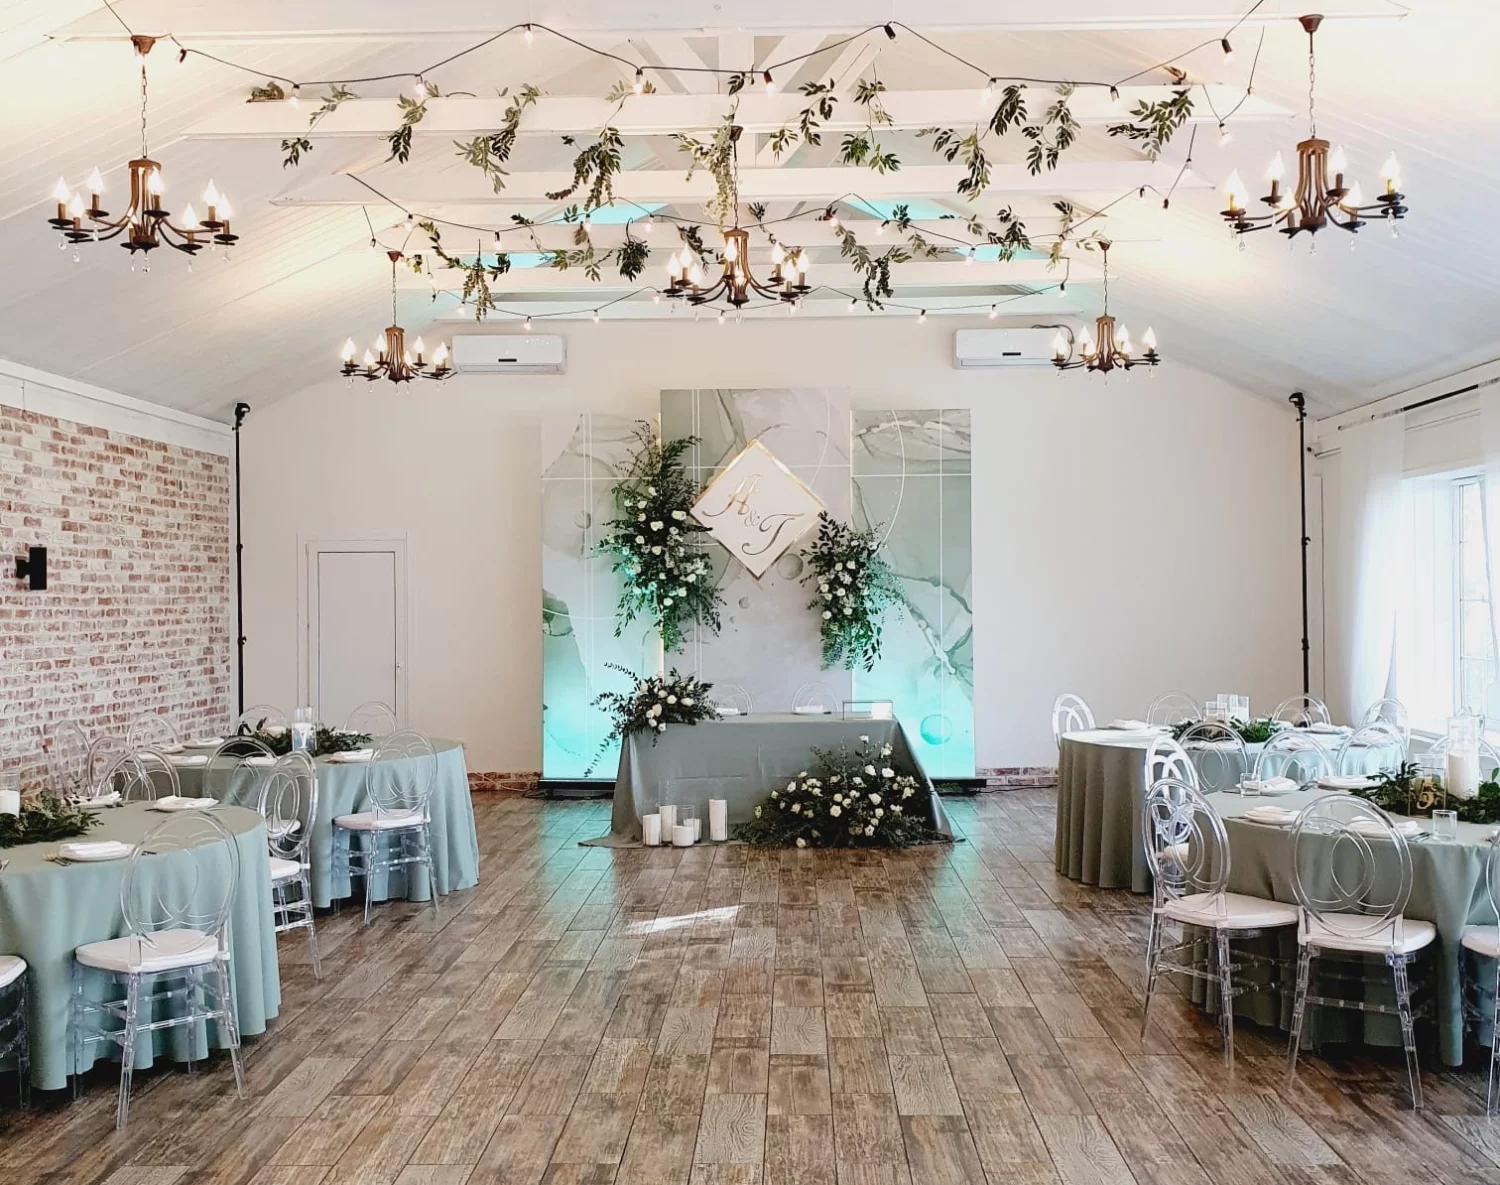 Фото интерьера ресторана "Усадьба Подгорье", декорированного под тематическую свадьбу в нежных голубых тонах 